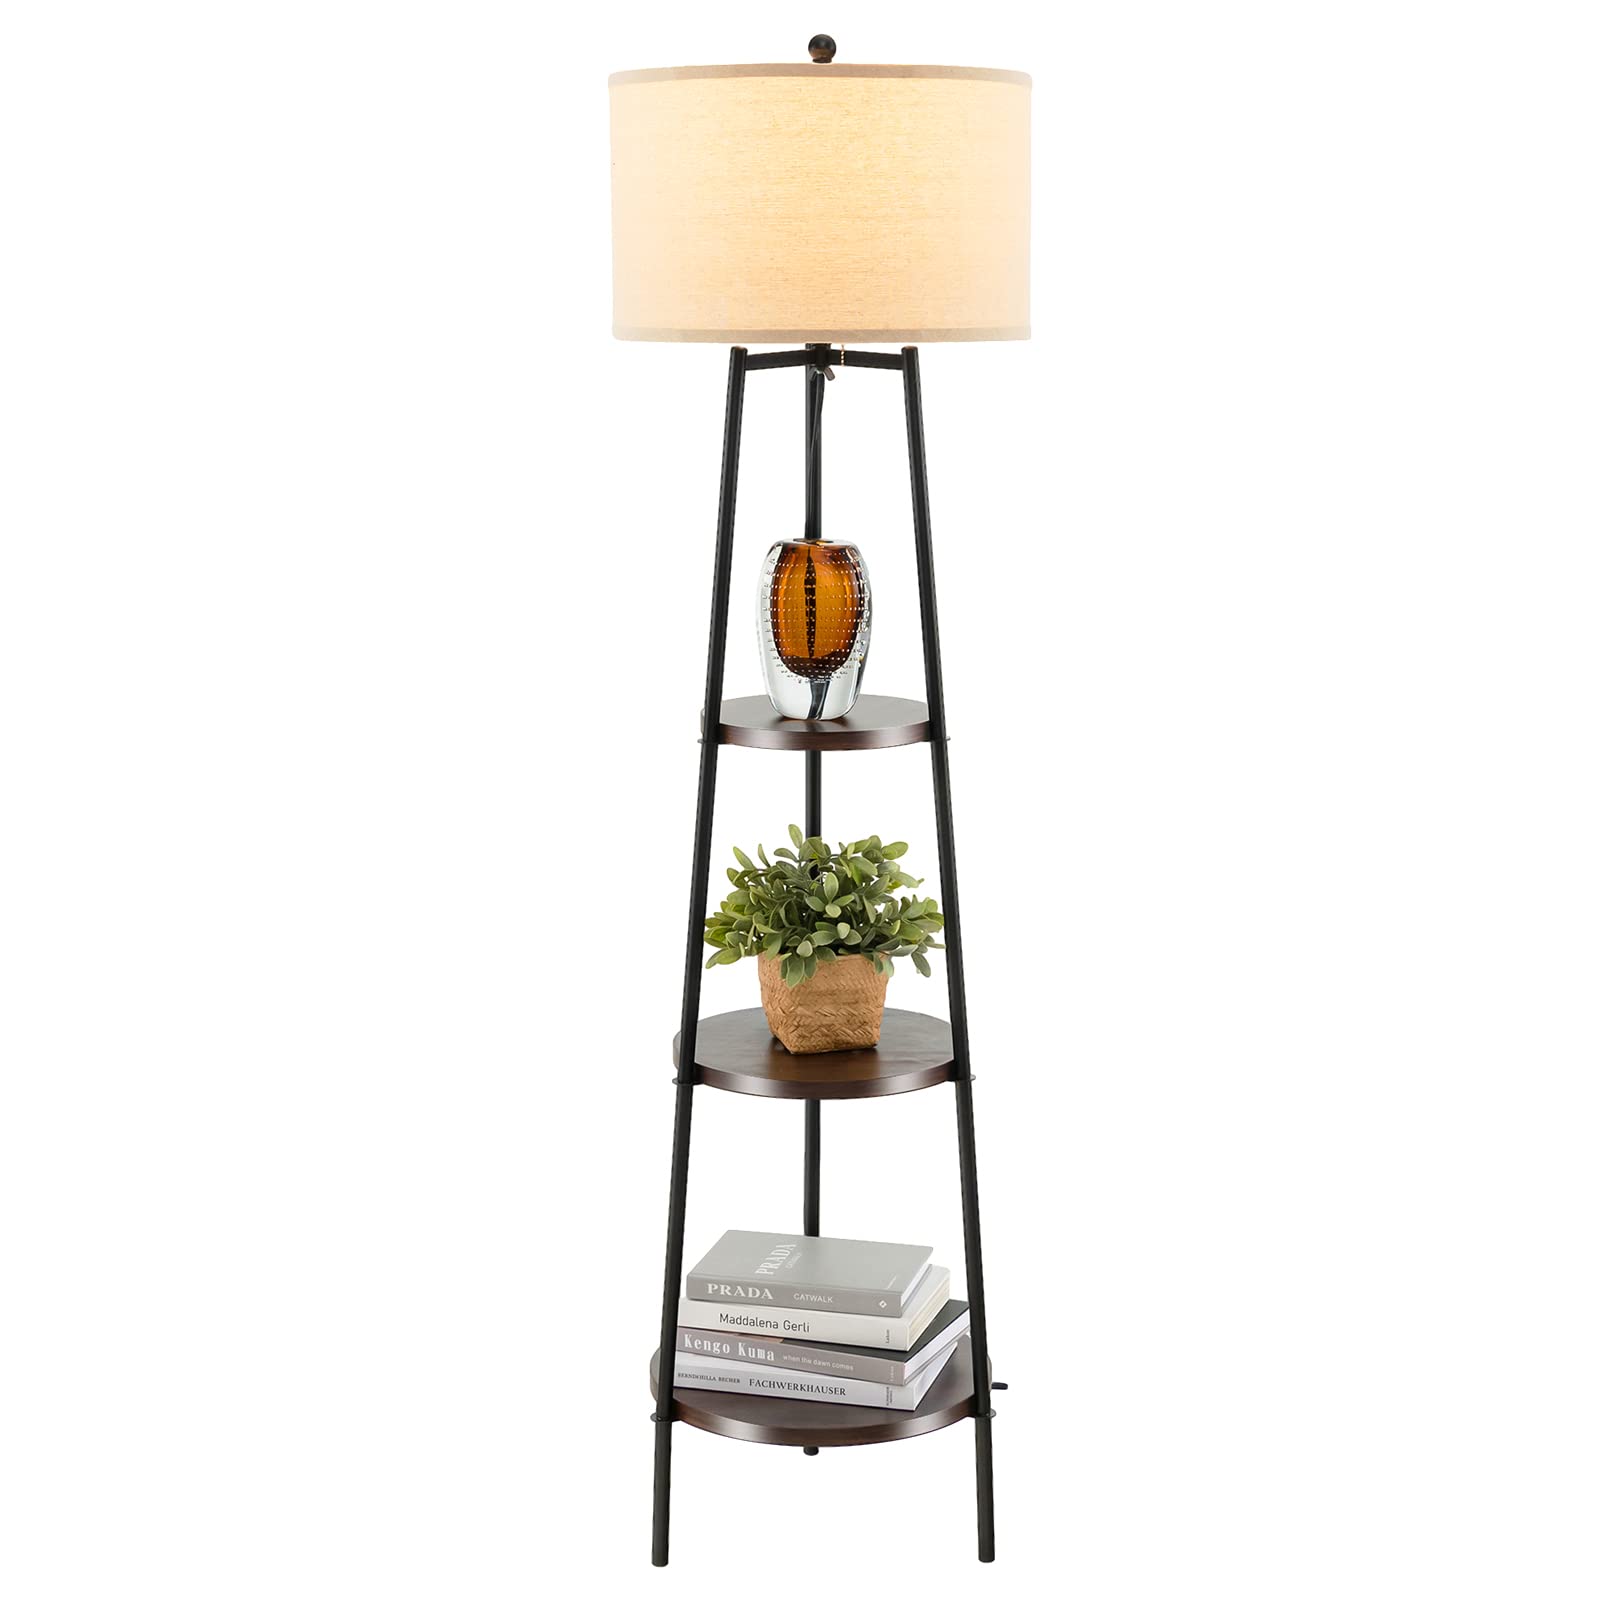 Giantex Floor Lamp with 3-Tier Shelves - Modern Standing Corner Floor Lamp